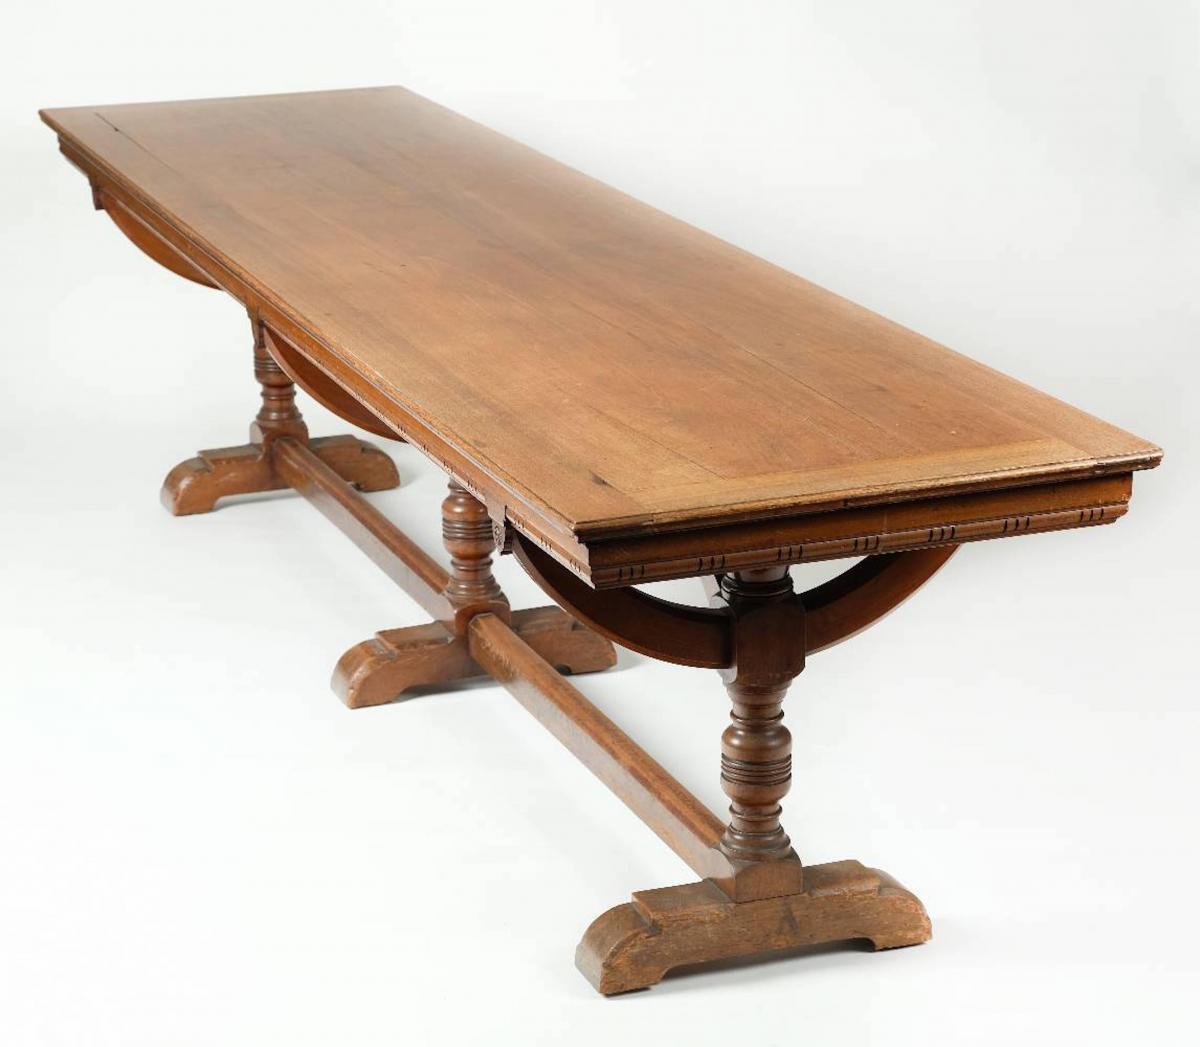 A pair of 3m long mahogany library tables